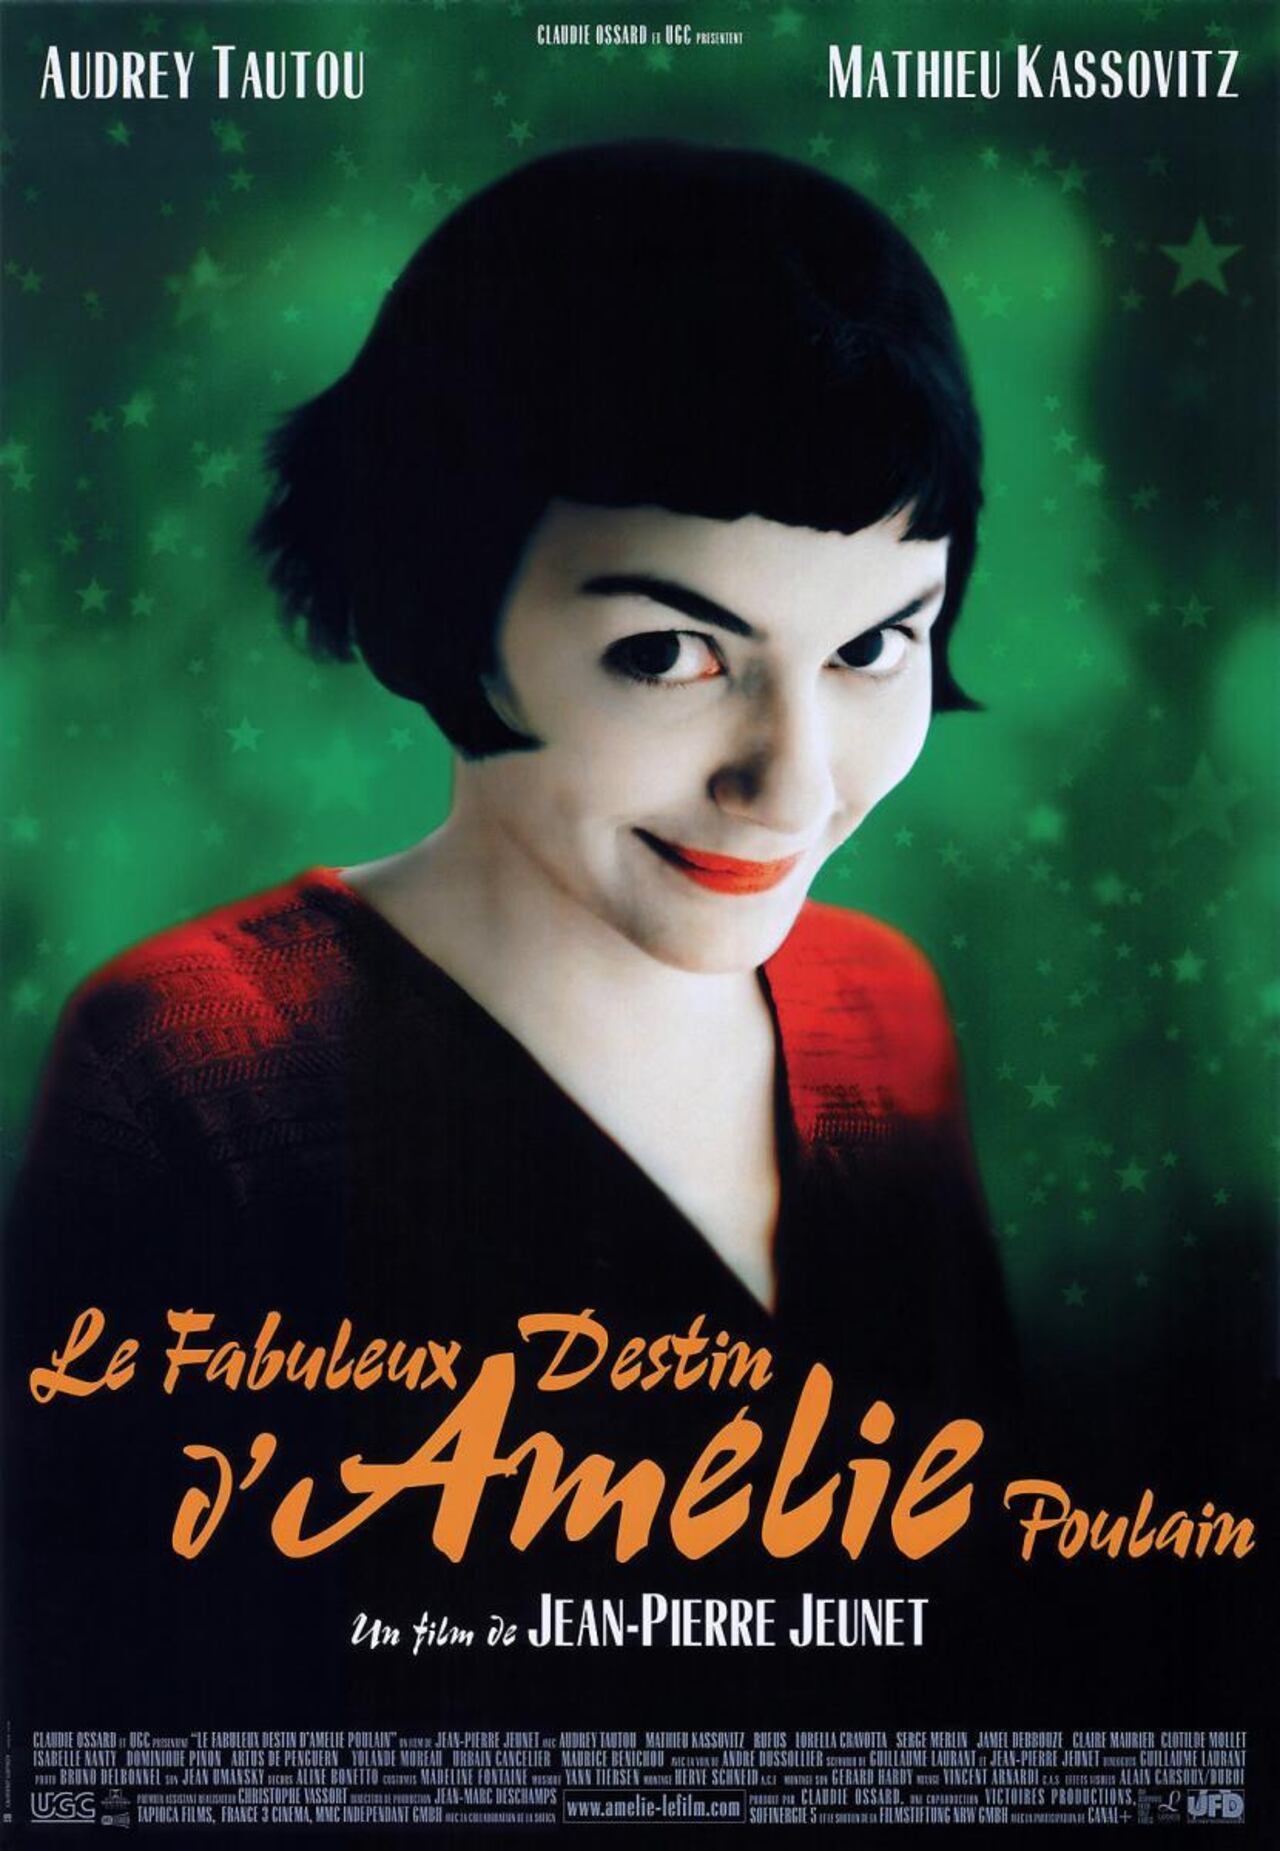 El fabuloso destino de Amélie Poulain, dirigida por Jean-Pierre Jeunet